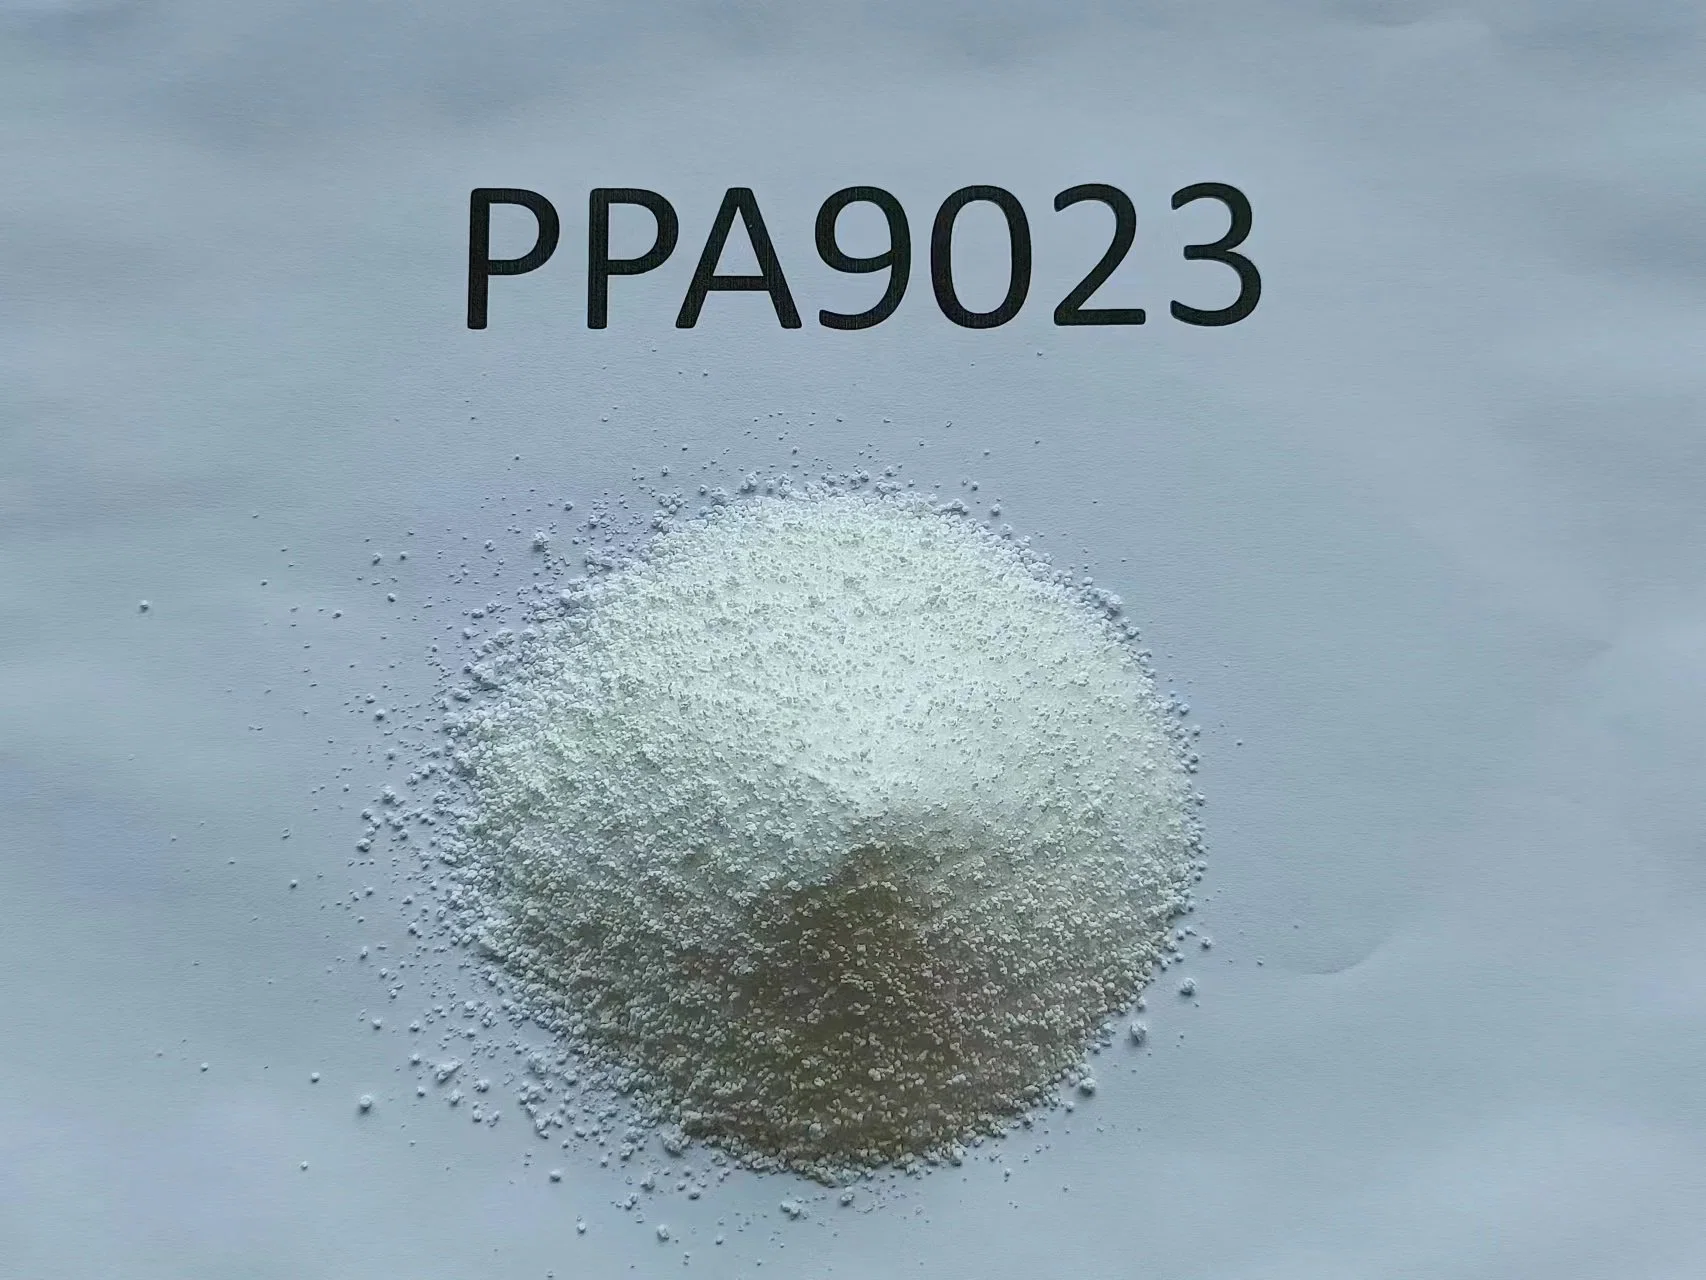 Procesamiento de polímeros aditivos de las DVP9023; la película, Reparto de film soplado, moldeo por soplado el hueco del tubo de plástico, productos, hojas, el maestro de los lotes.